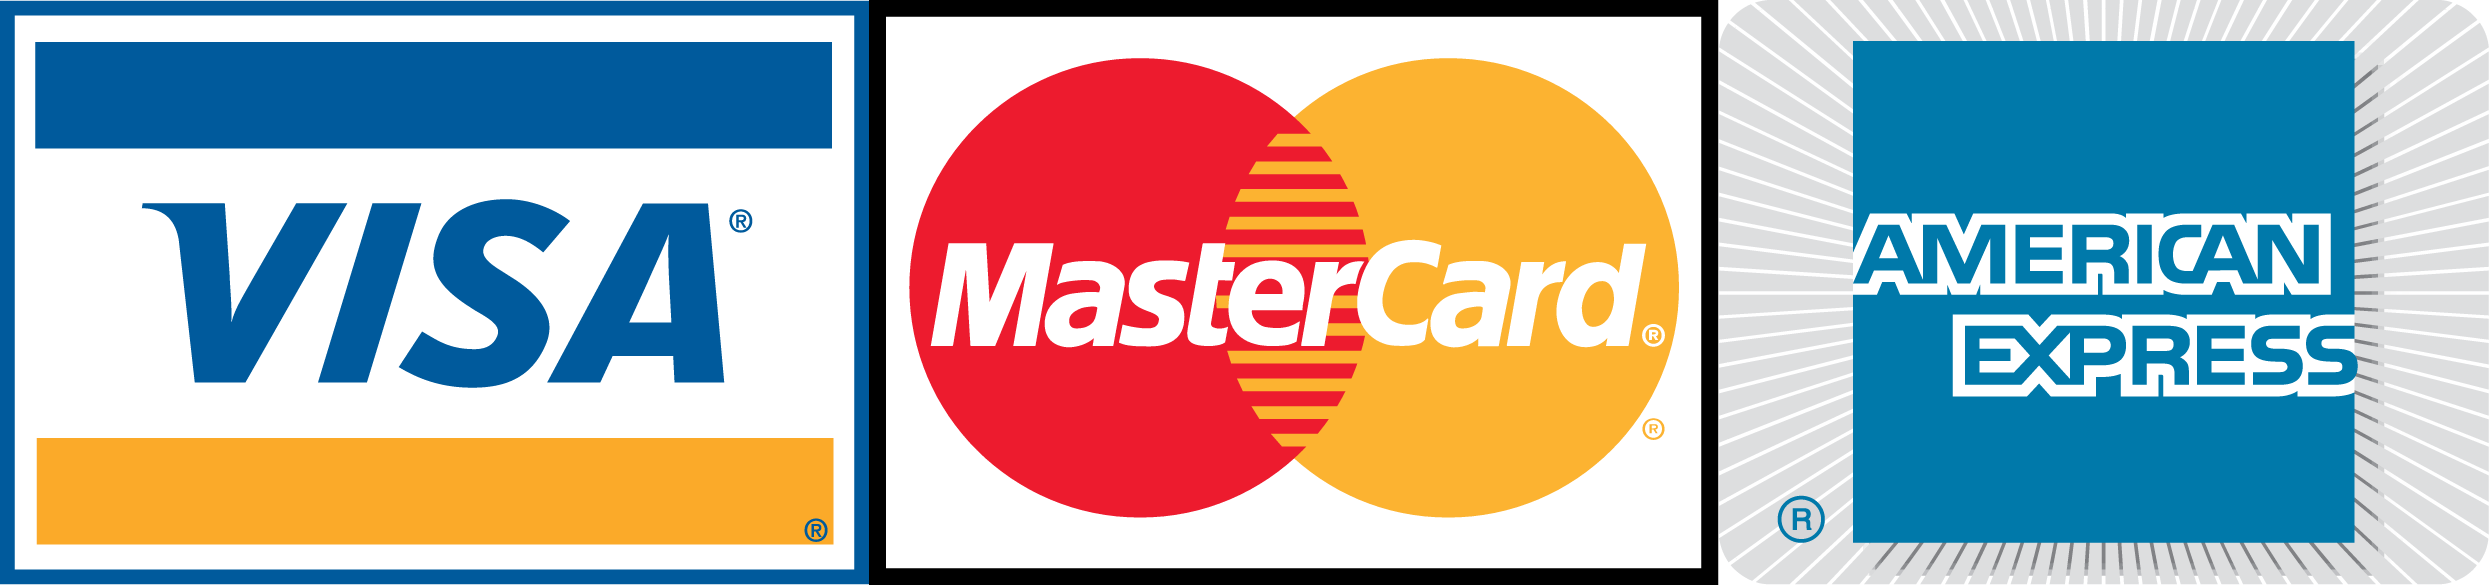 American Express Visa MasterCard Logo - Mastercard HD PNG Transparent Mastercard HD PNG Image